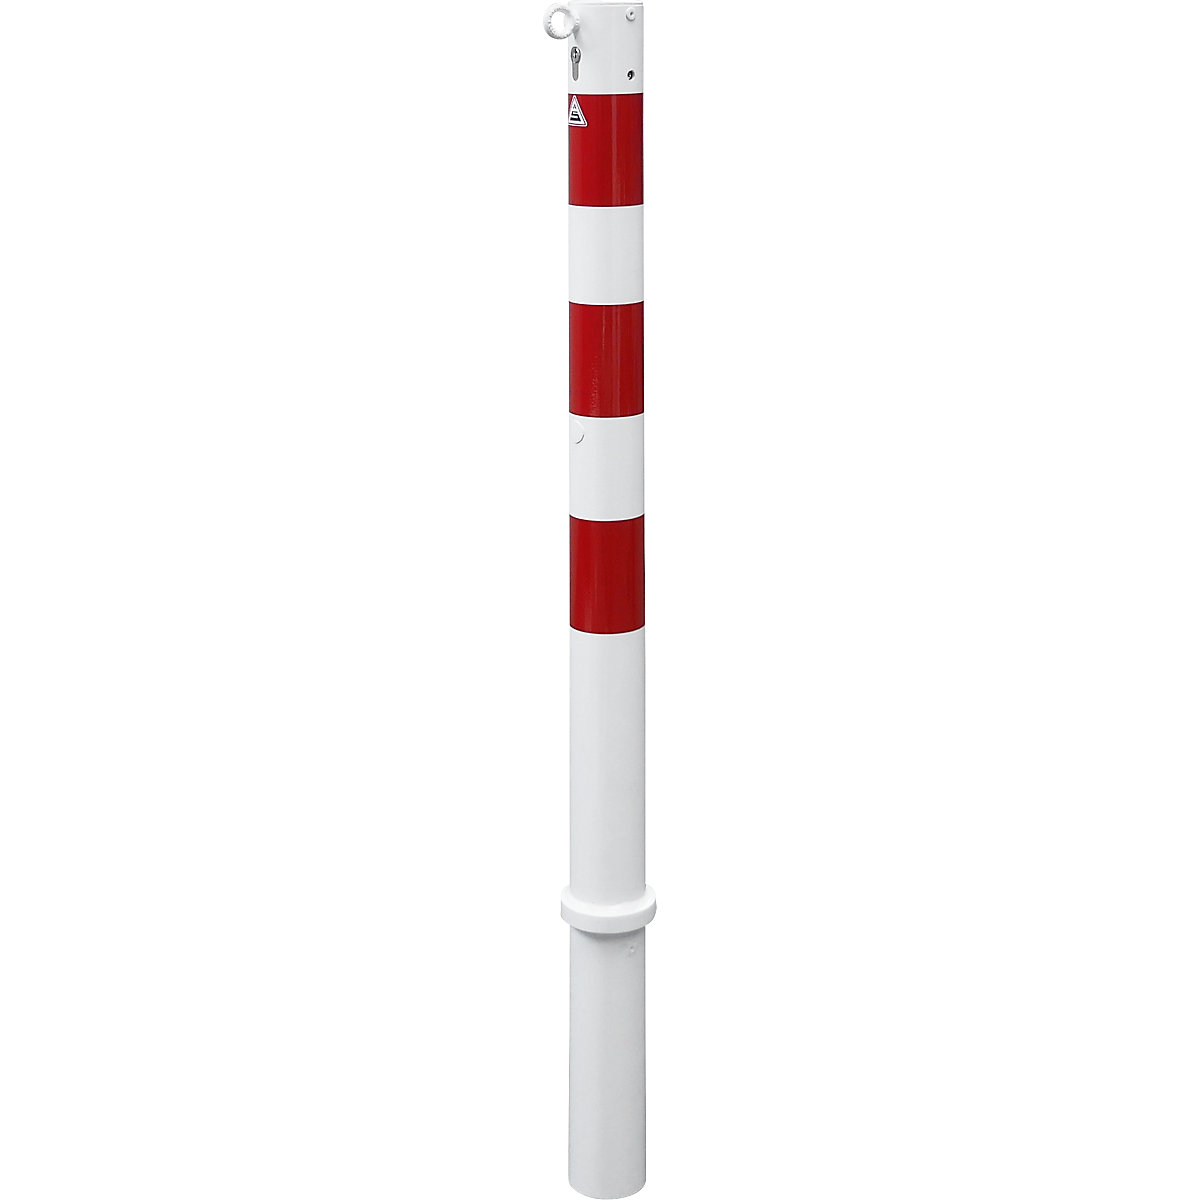 Stupić za ograđivanje, Ø 76 mm, u bijelo / crvenoj boji, s mogućnošću vađenja i profilnim cilindrom, s 1 ušicom